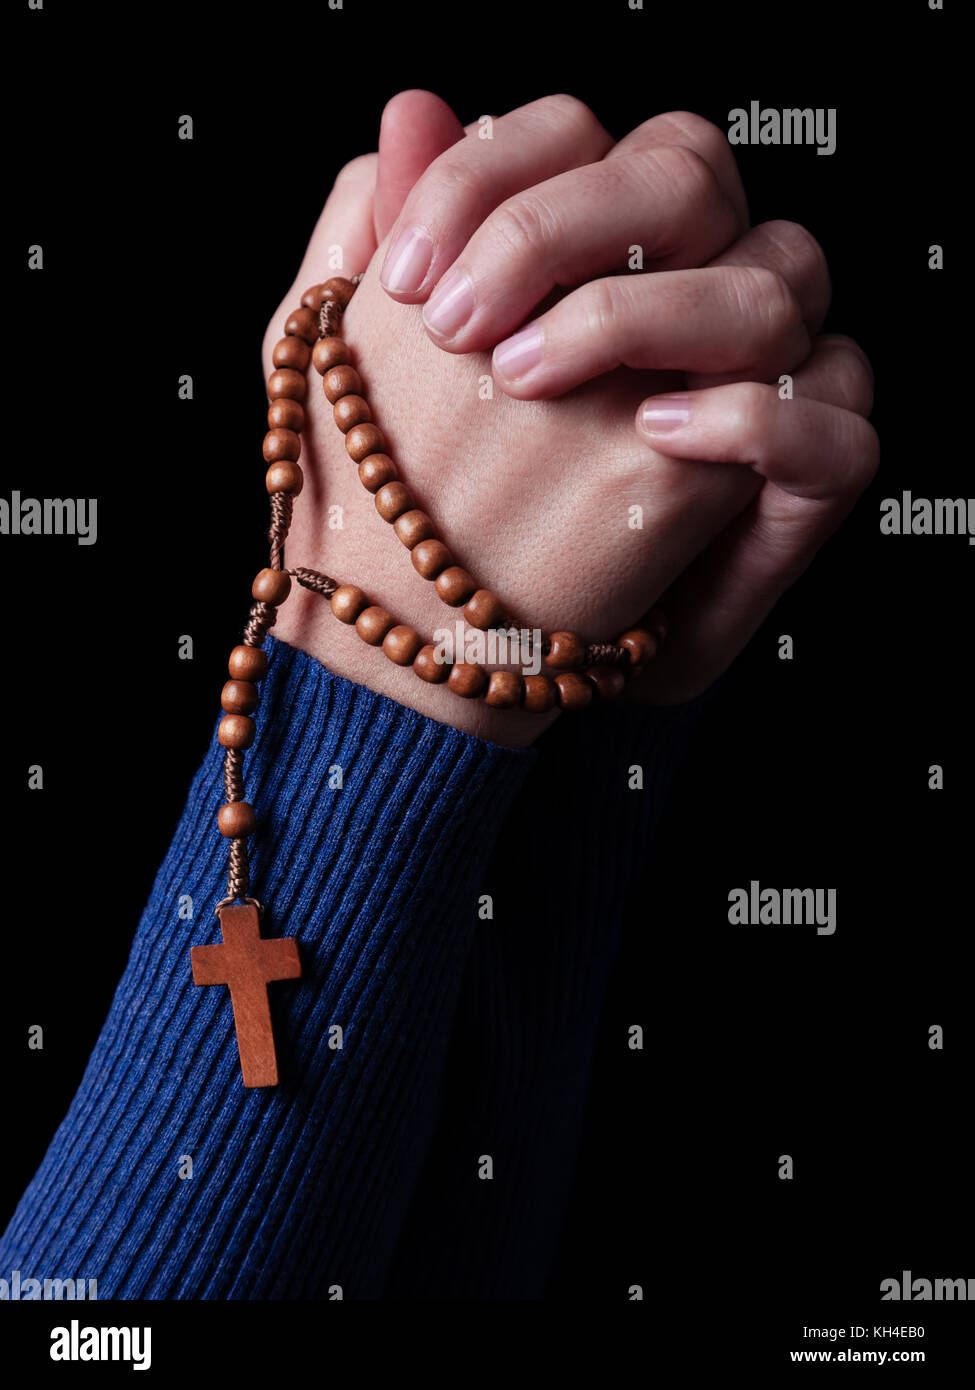 Femme priant mains tenant un rosaire avec Jésus Christ dans la croix ou crucifix sur fond noir. femme avec la foi chrétienne catholique Banque D'Images